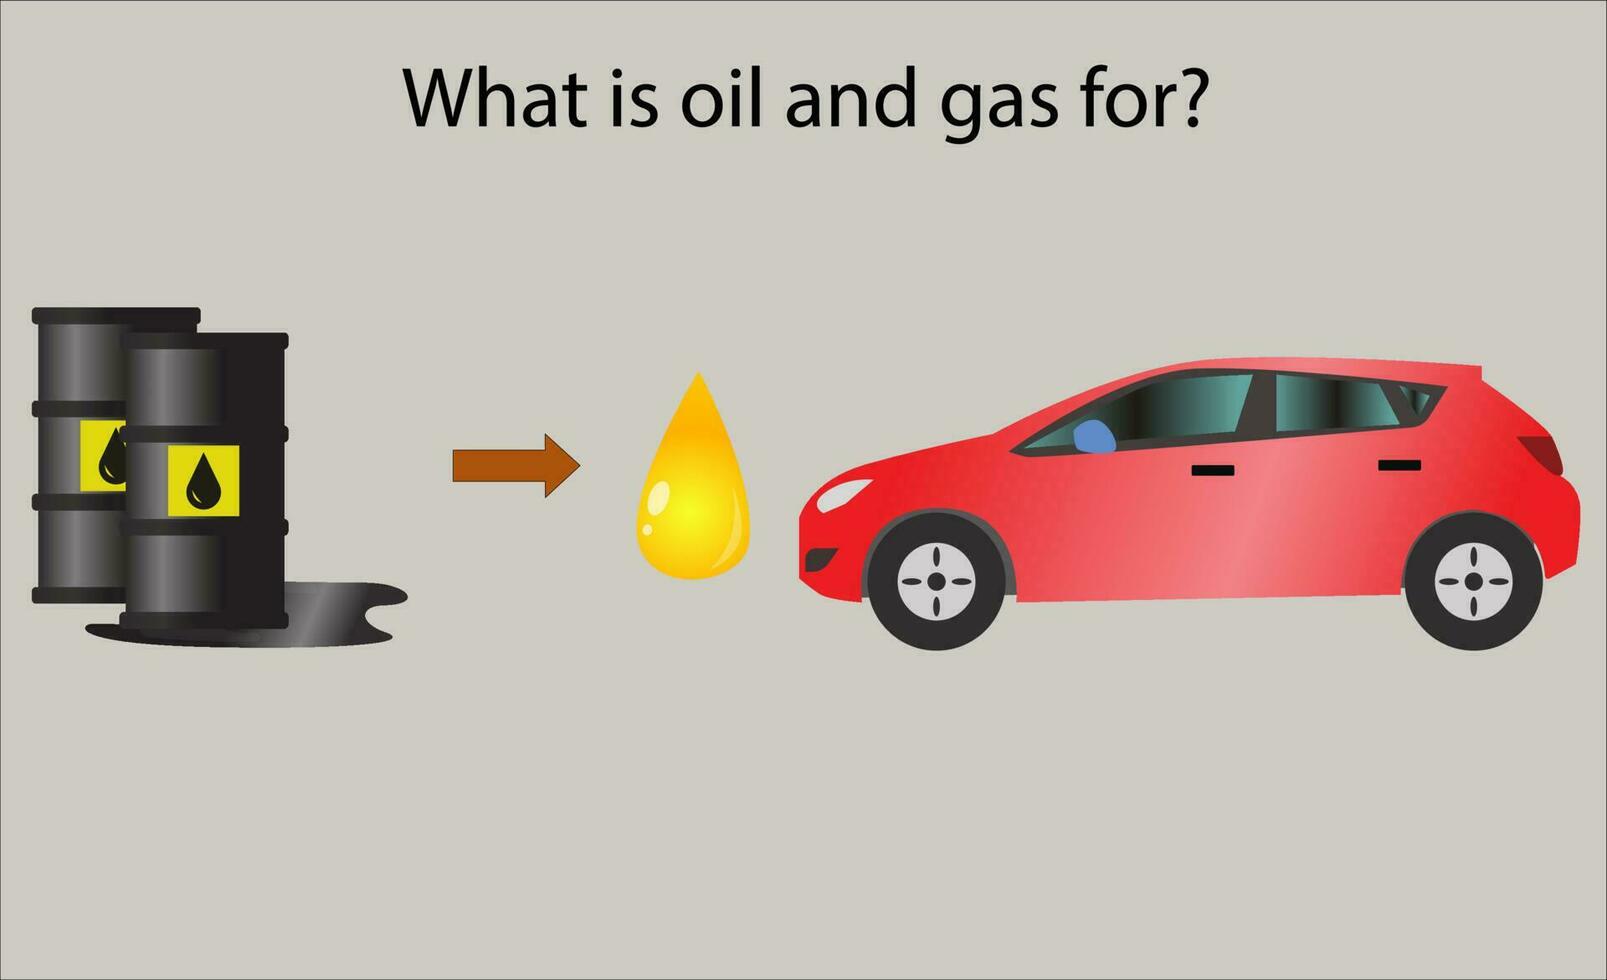 formation de pétrole et gaz vecteur illustration, quoi pétrole et gaz pour infographie conception, pétrole extraction de géologique couches illustration, pétrole processus